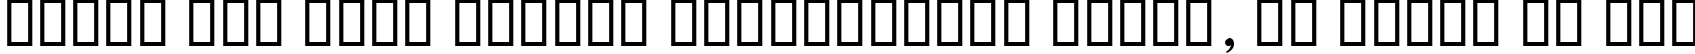 Пример написания шрифтом KacstBook текста на русском